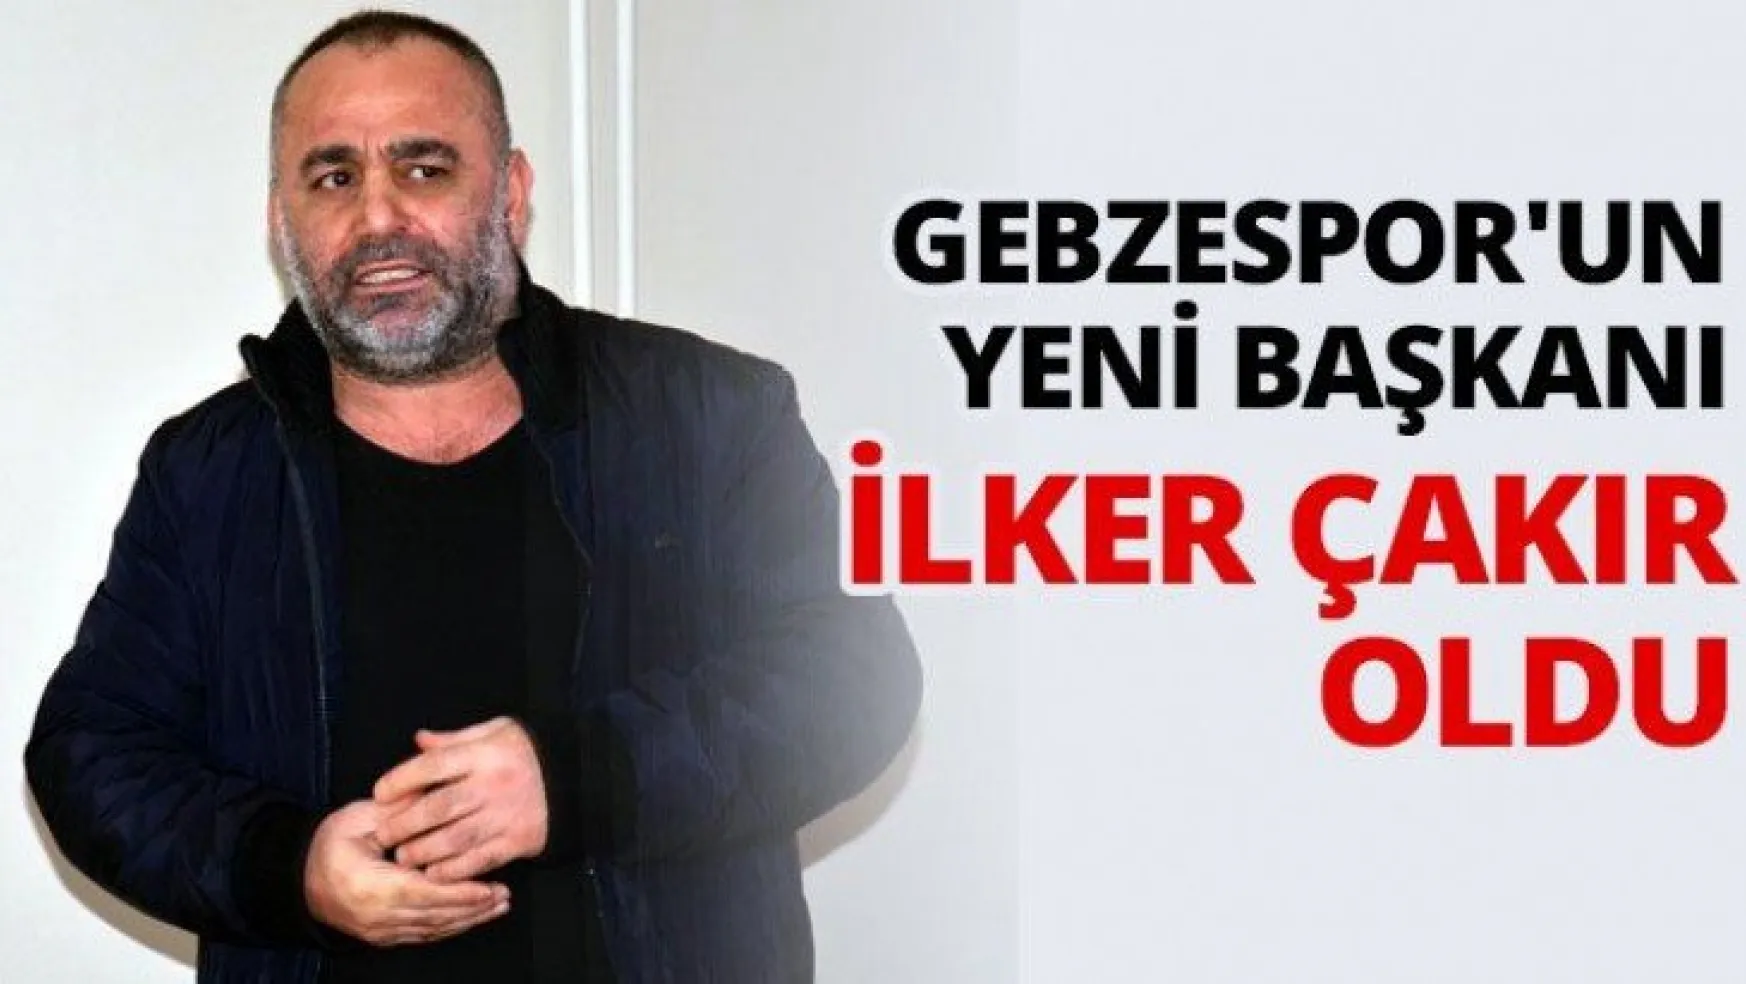 Gebzespor'un yeni başkanı İlker Çakır oldu